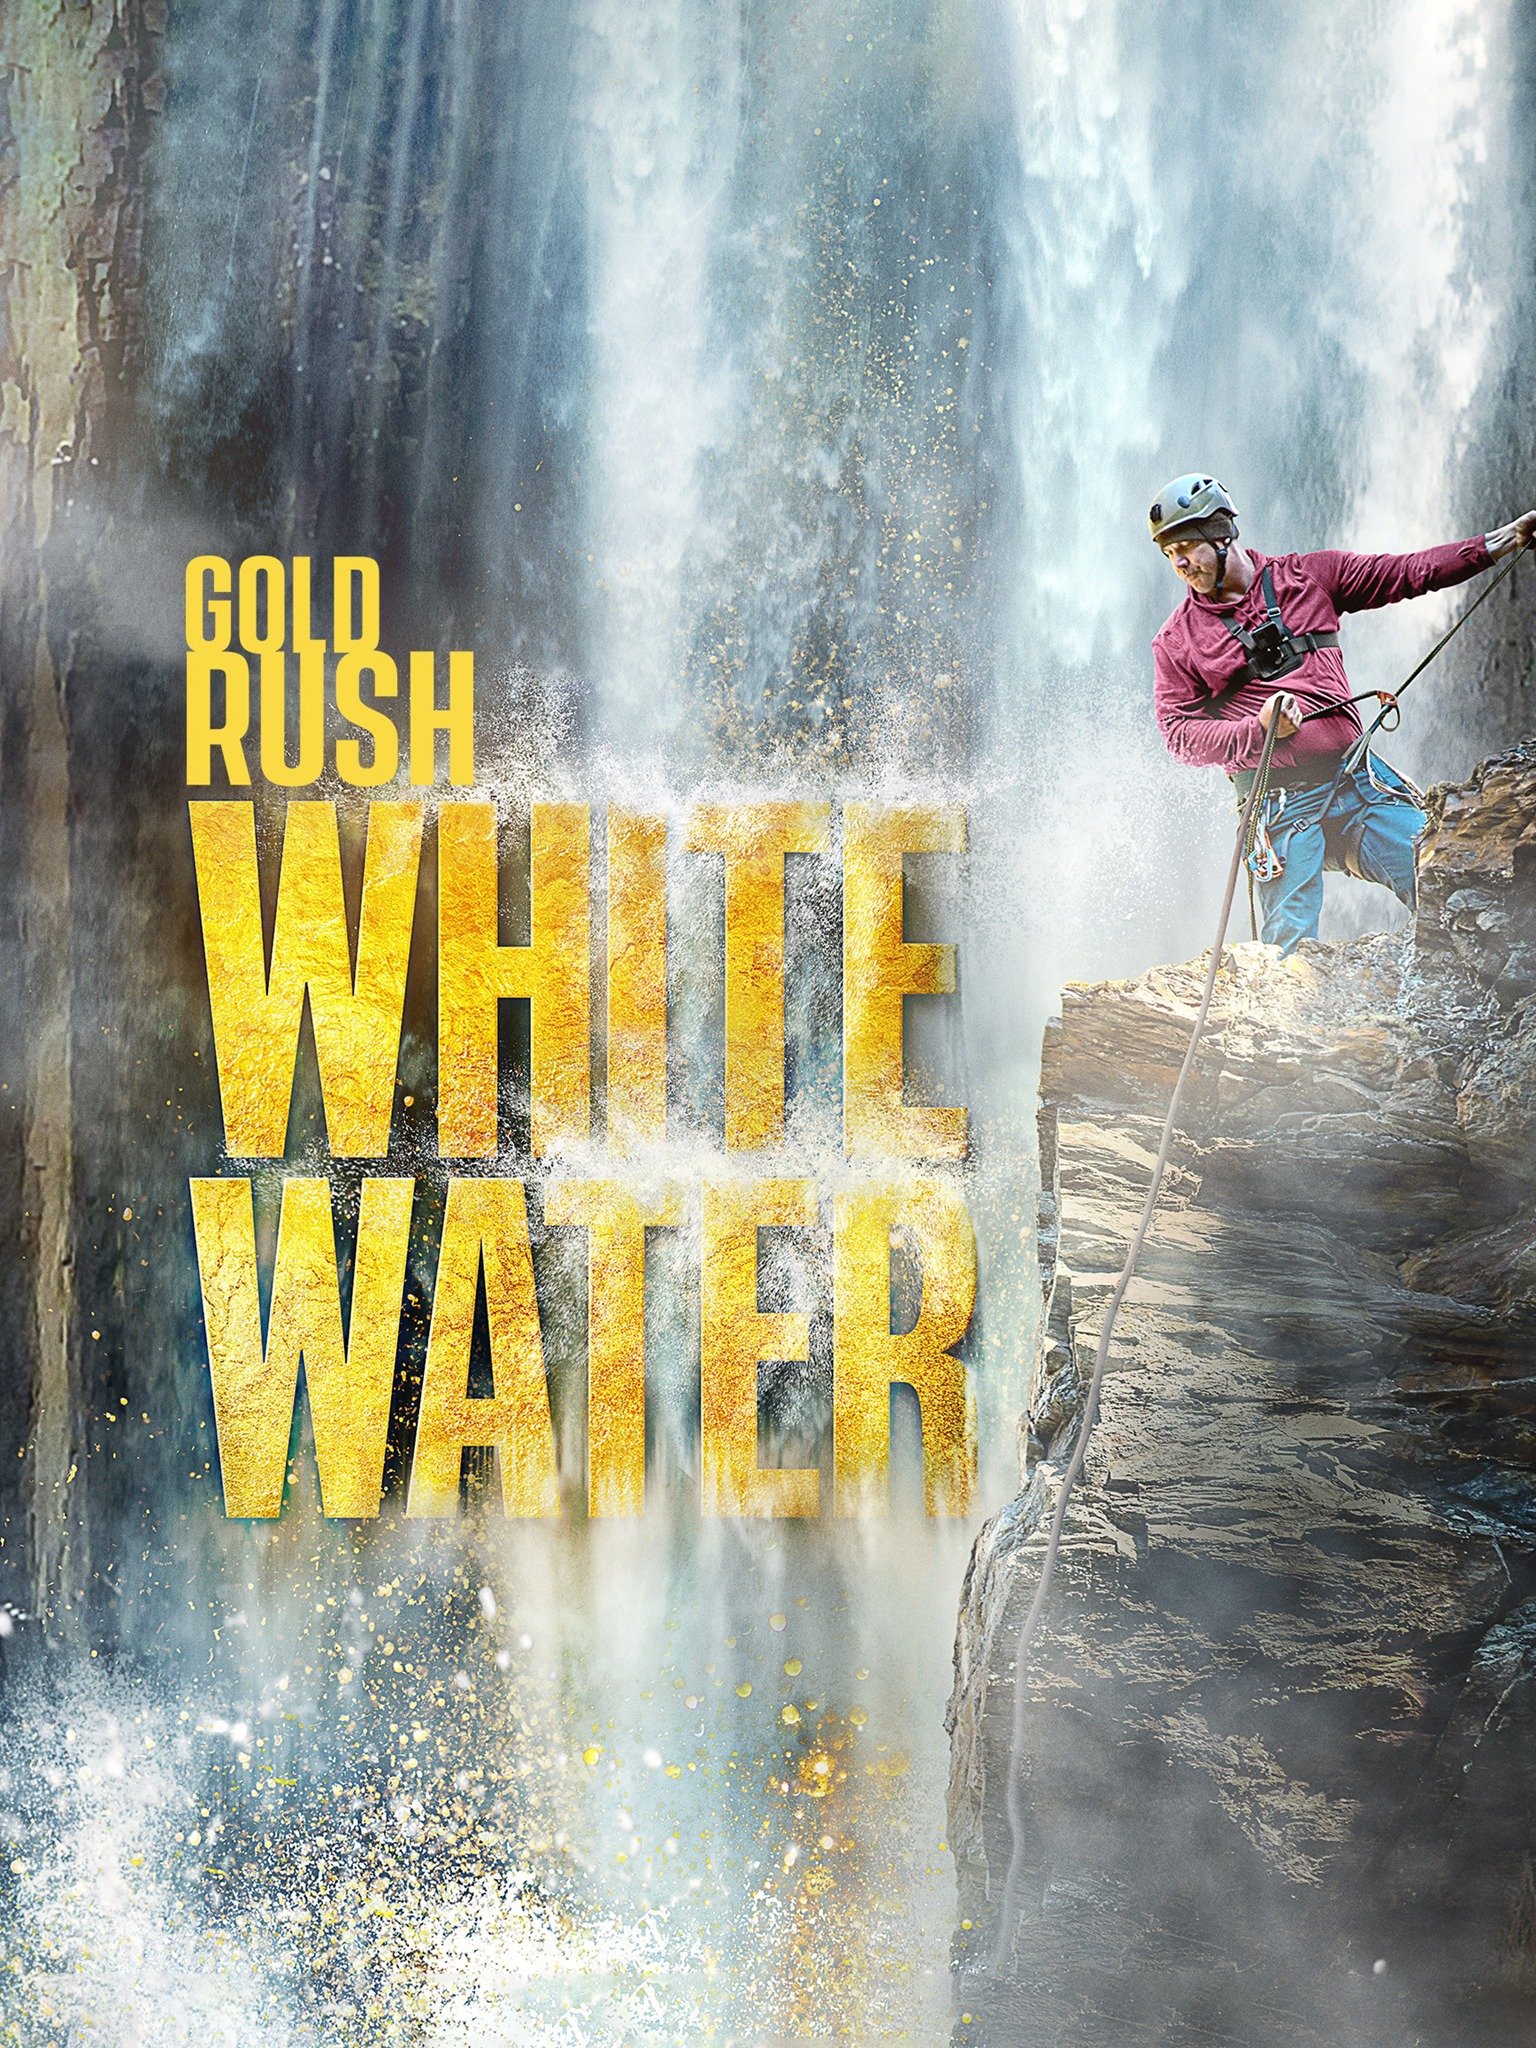 Gold Rush White Water Rotten Tomatoes